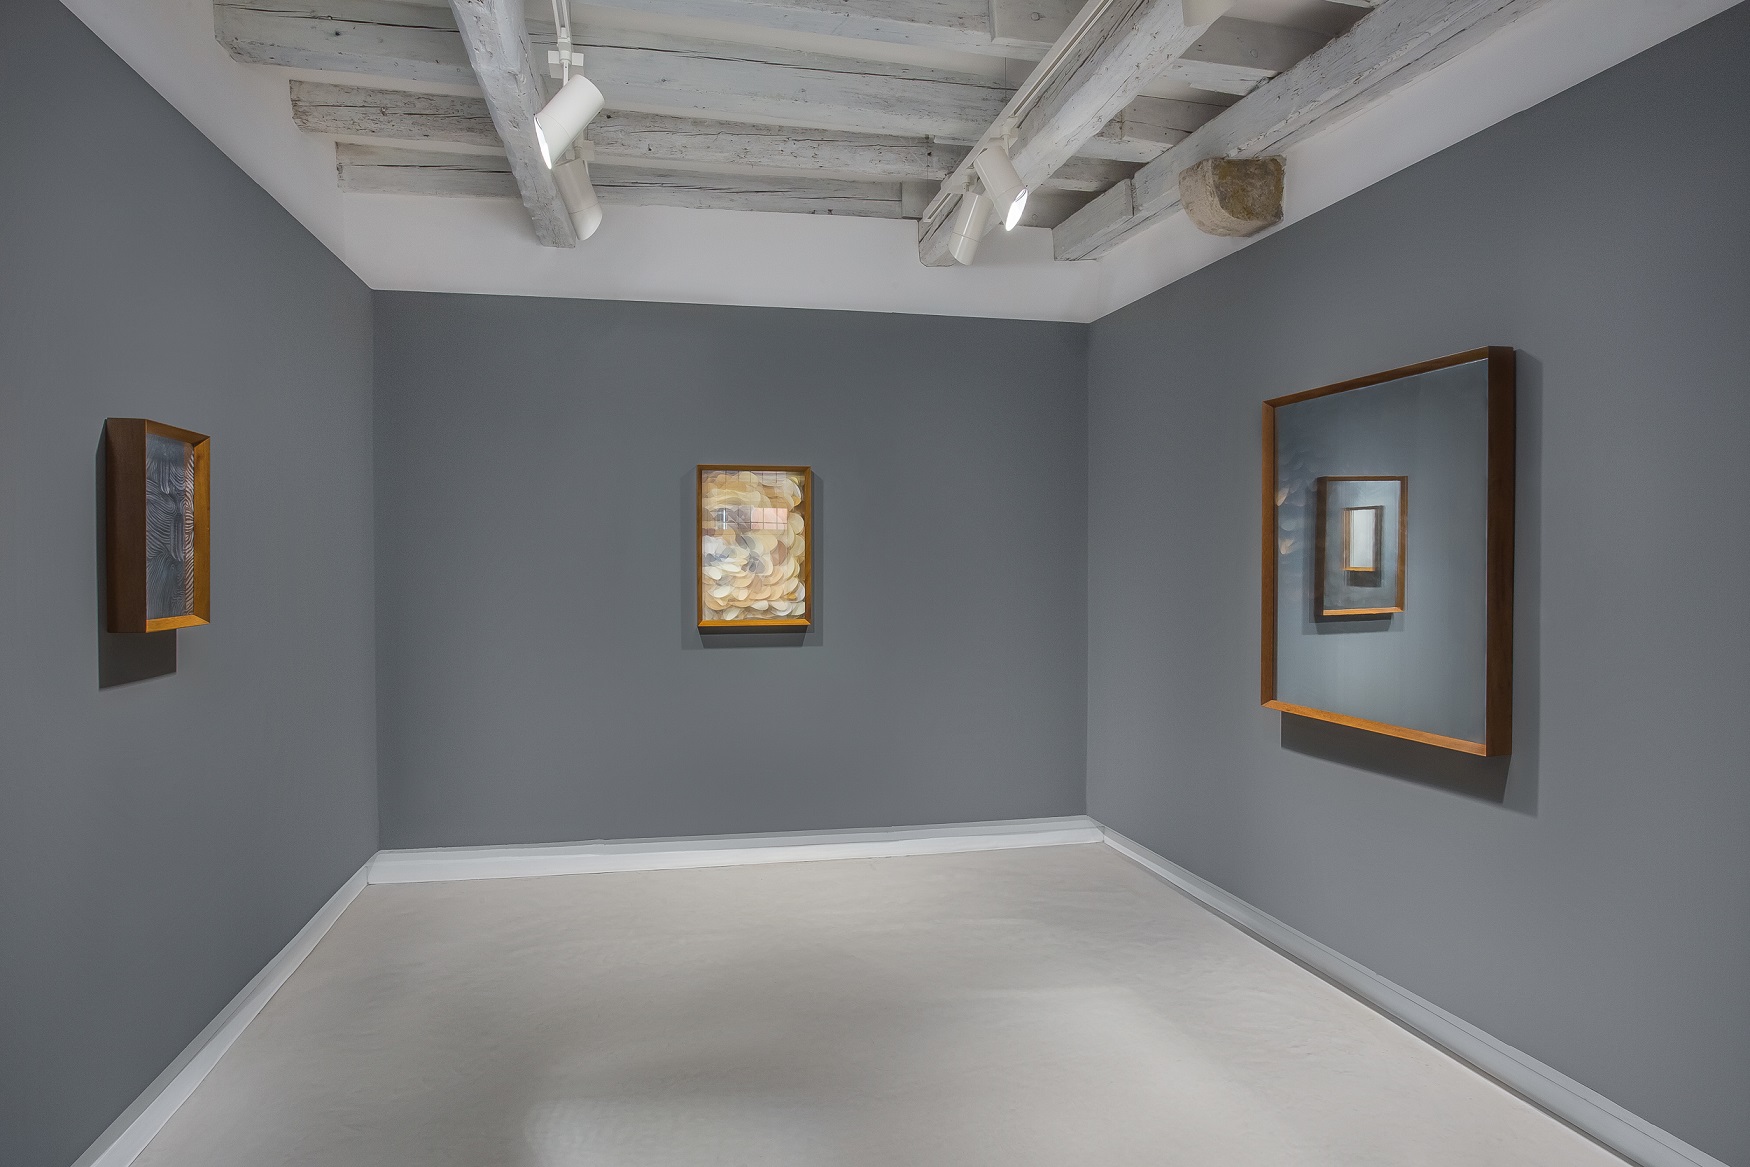 Maurizio Donzelli, Invisibile-No, exhibition view at Marignana Arte, sala 3, Venezia 2016, photo Enrico Fiorese